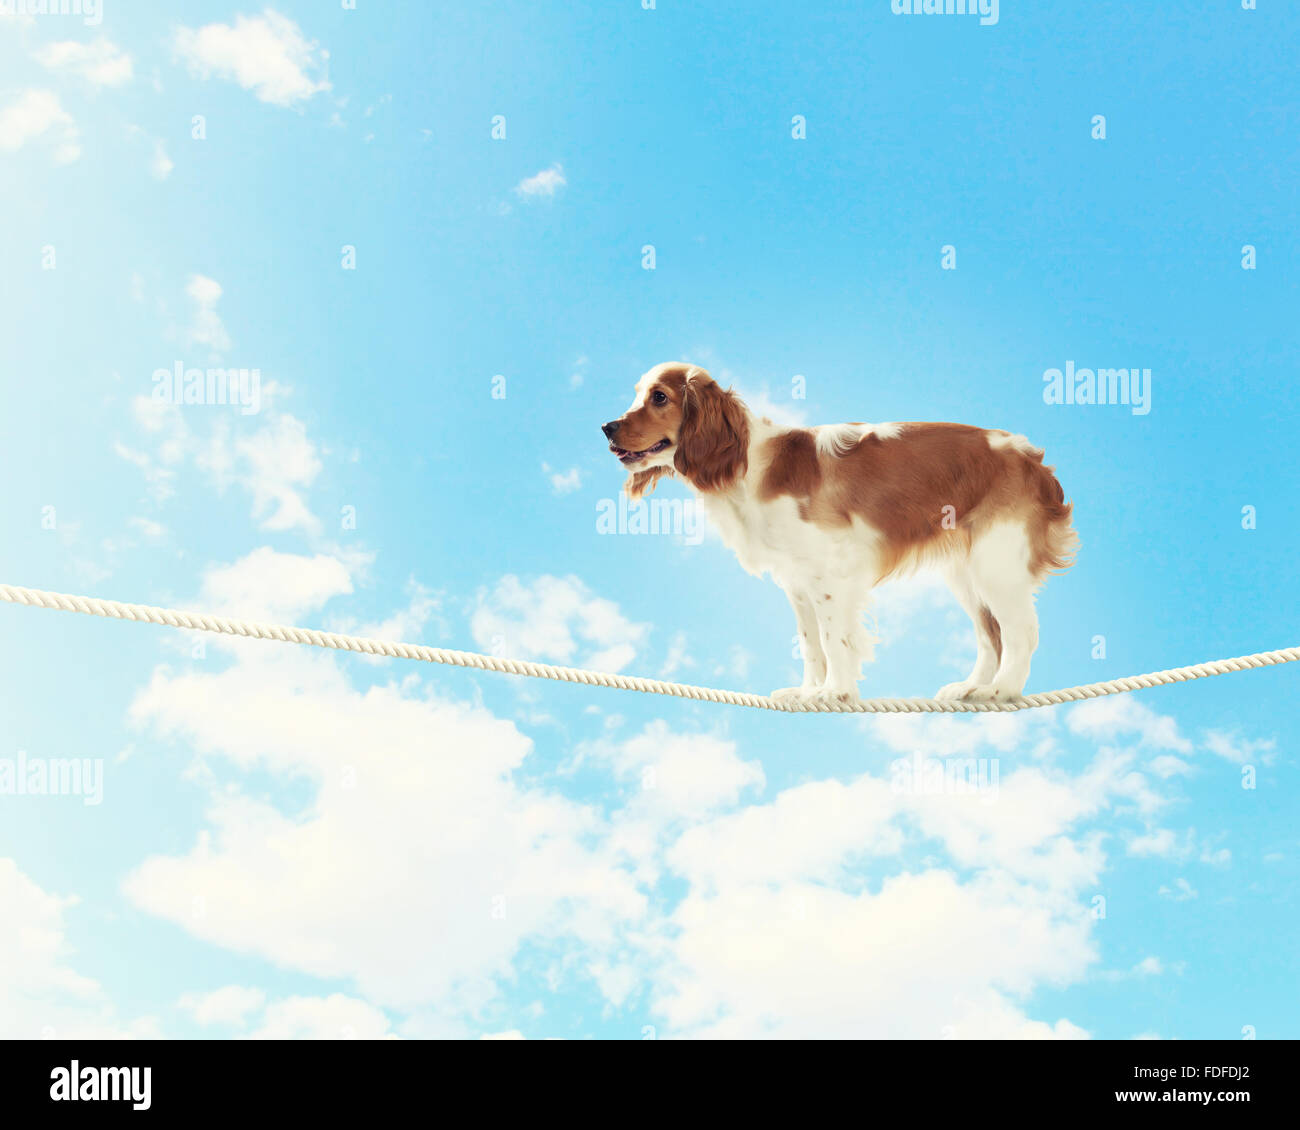 Image of spaniel dog balancing on rope Stock Photo